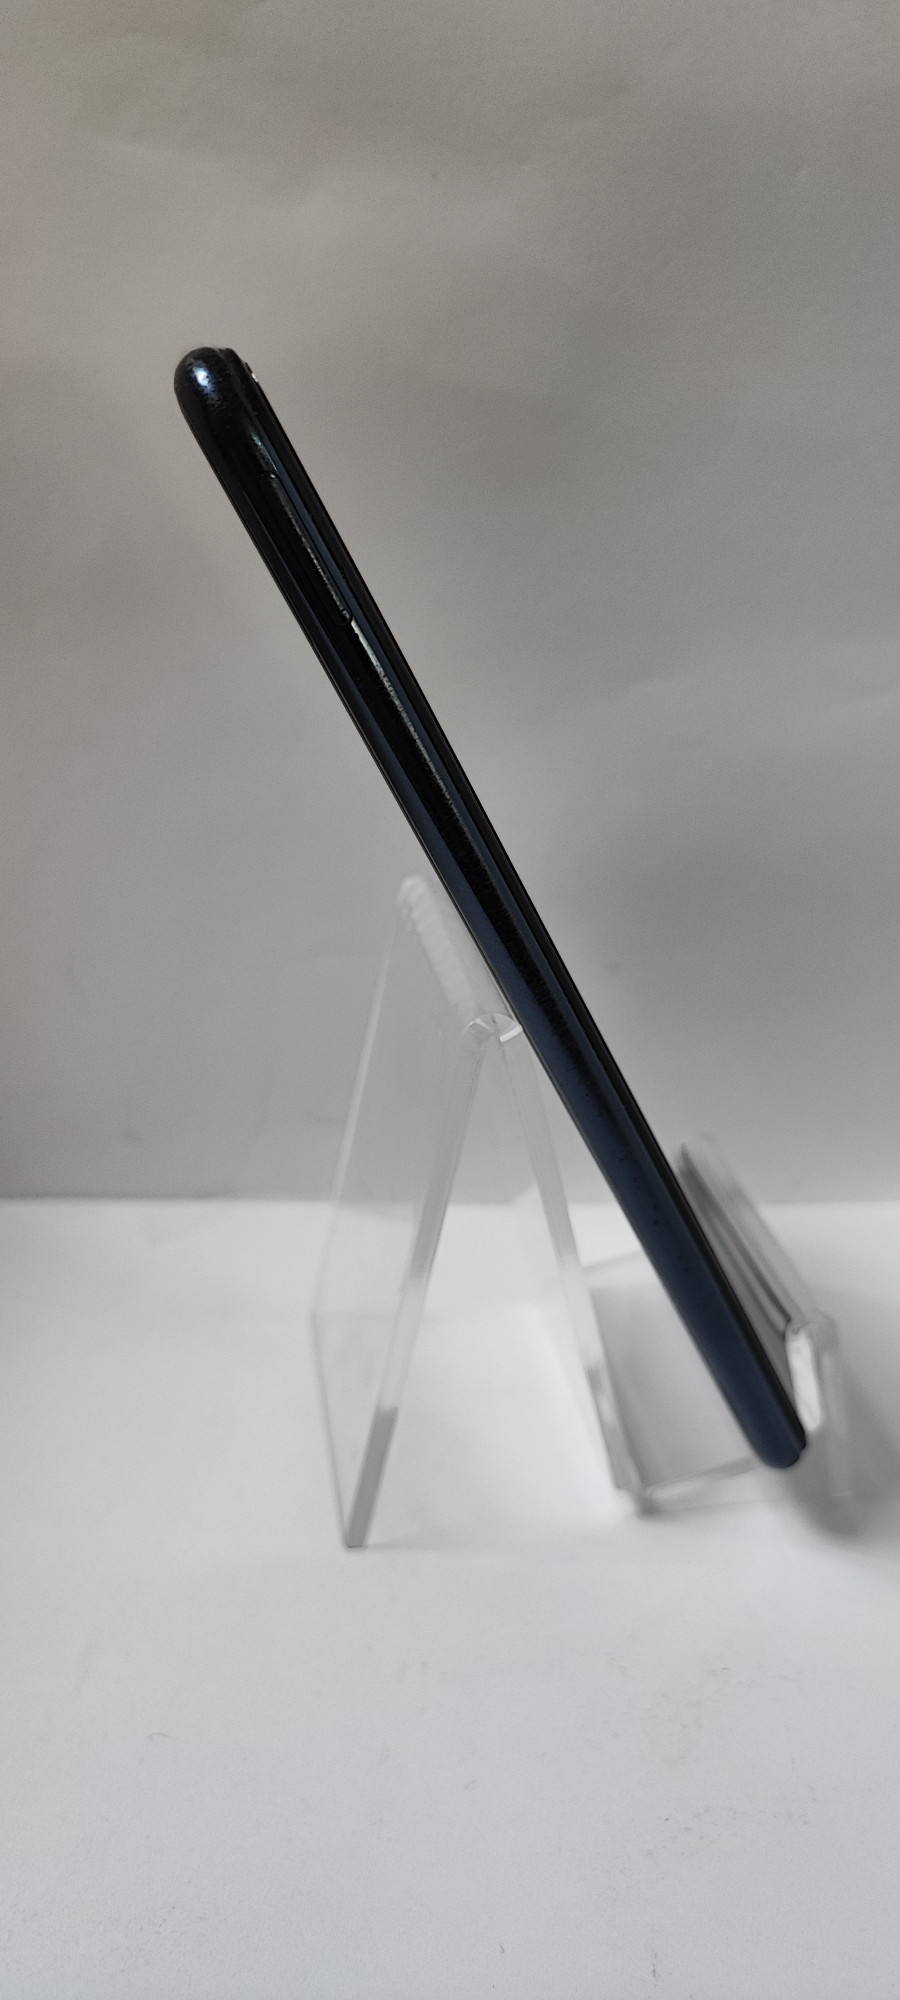 Samsung Galaxy A7 (SM-A750FN) 2018 4/64Gb 6